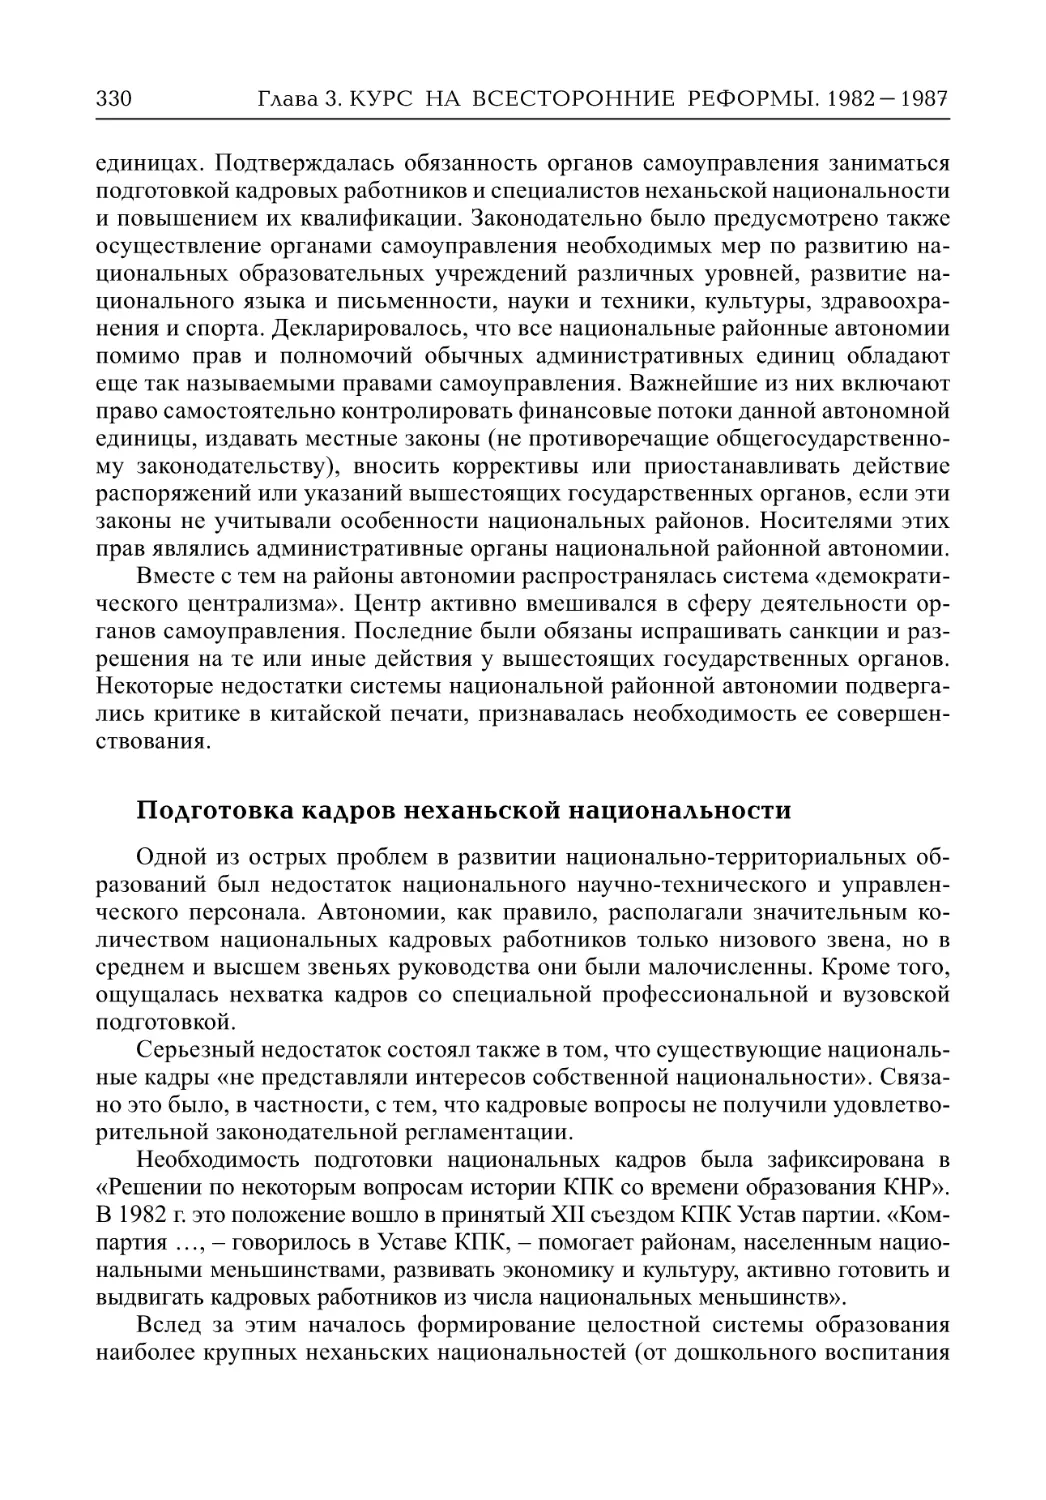 Подготовка кадров неханьской национальности (Т.В. Лазарева)